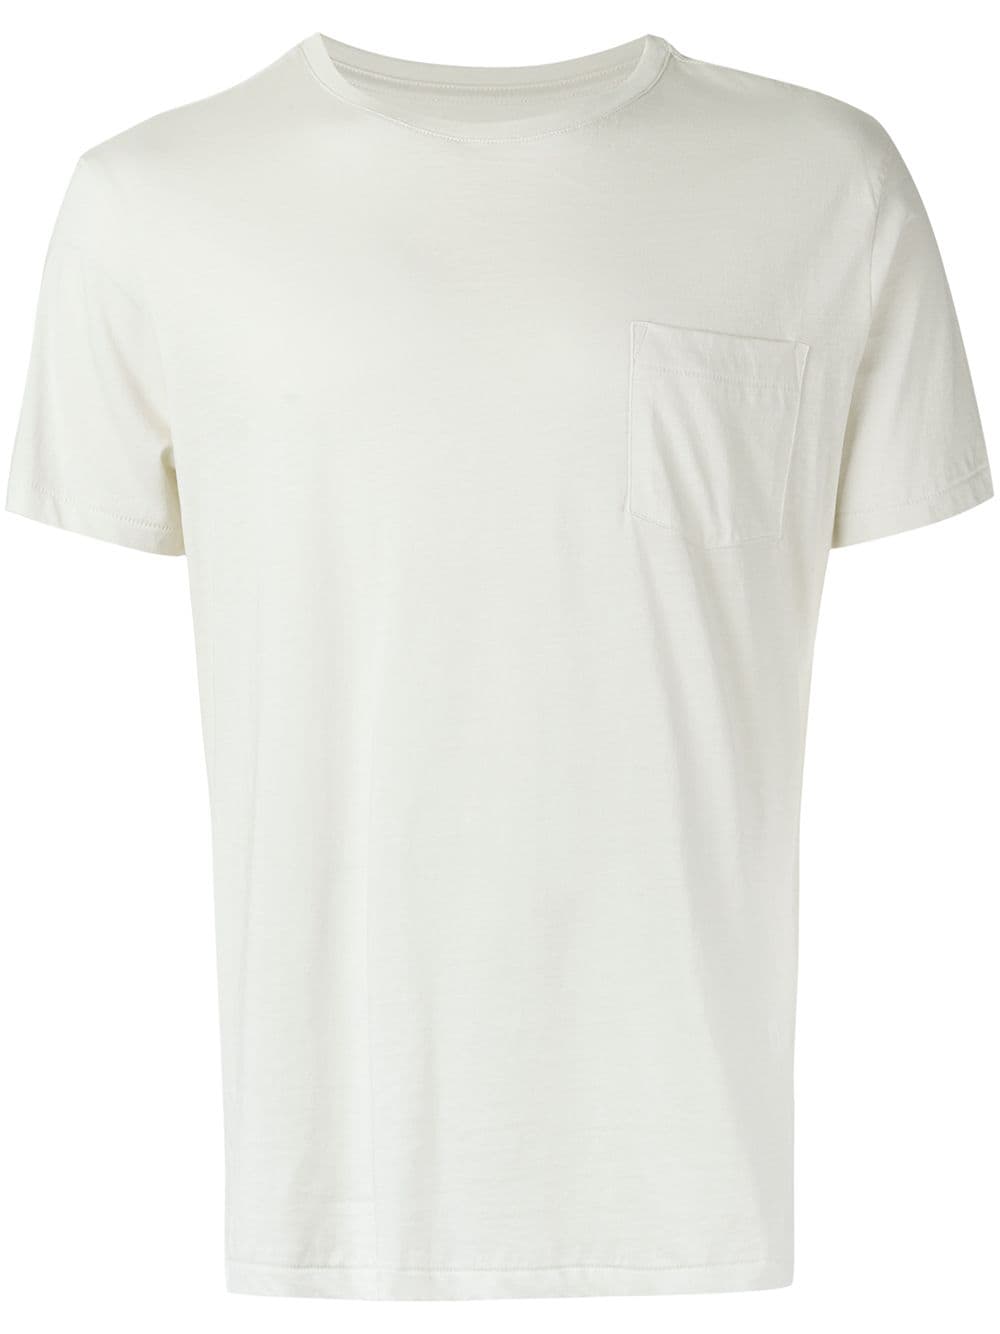 Osklen plain t-shirt - White